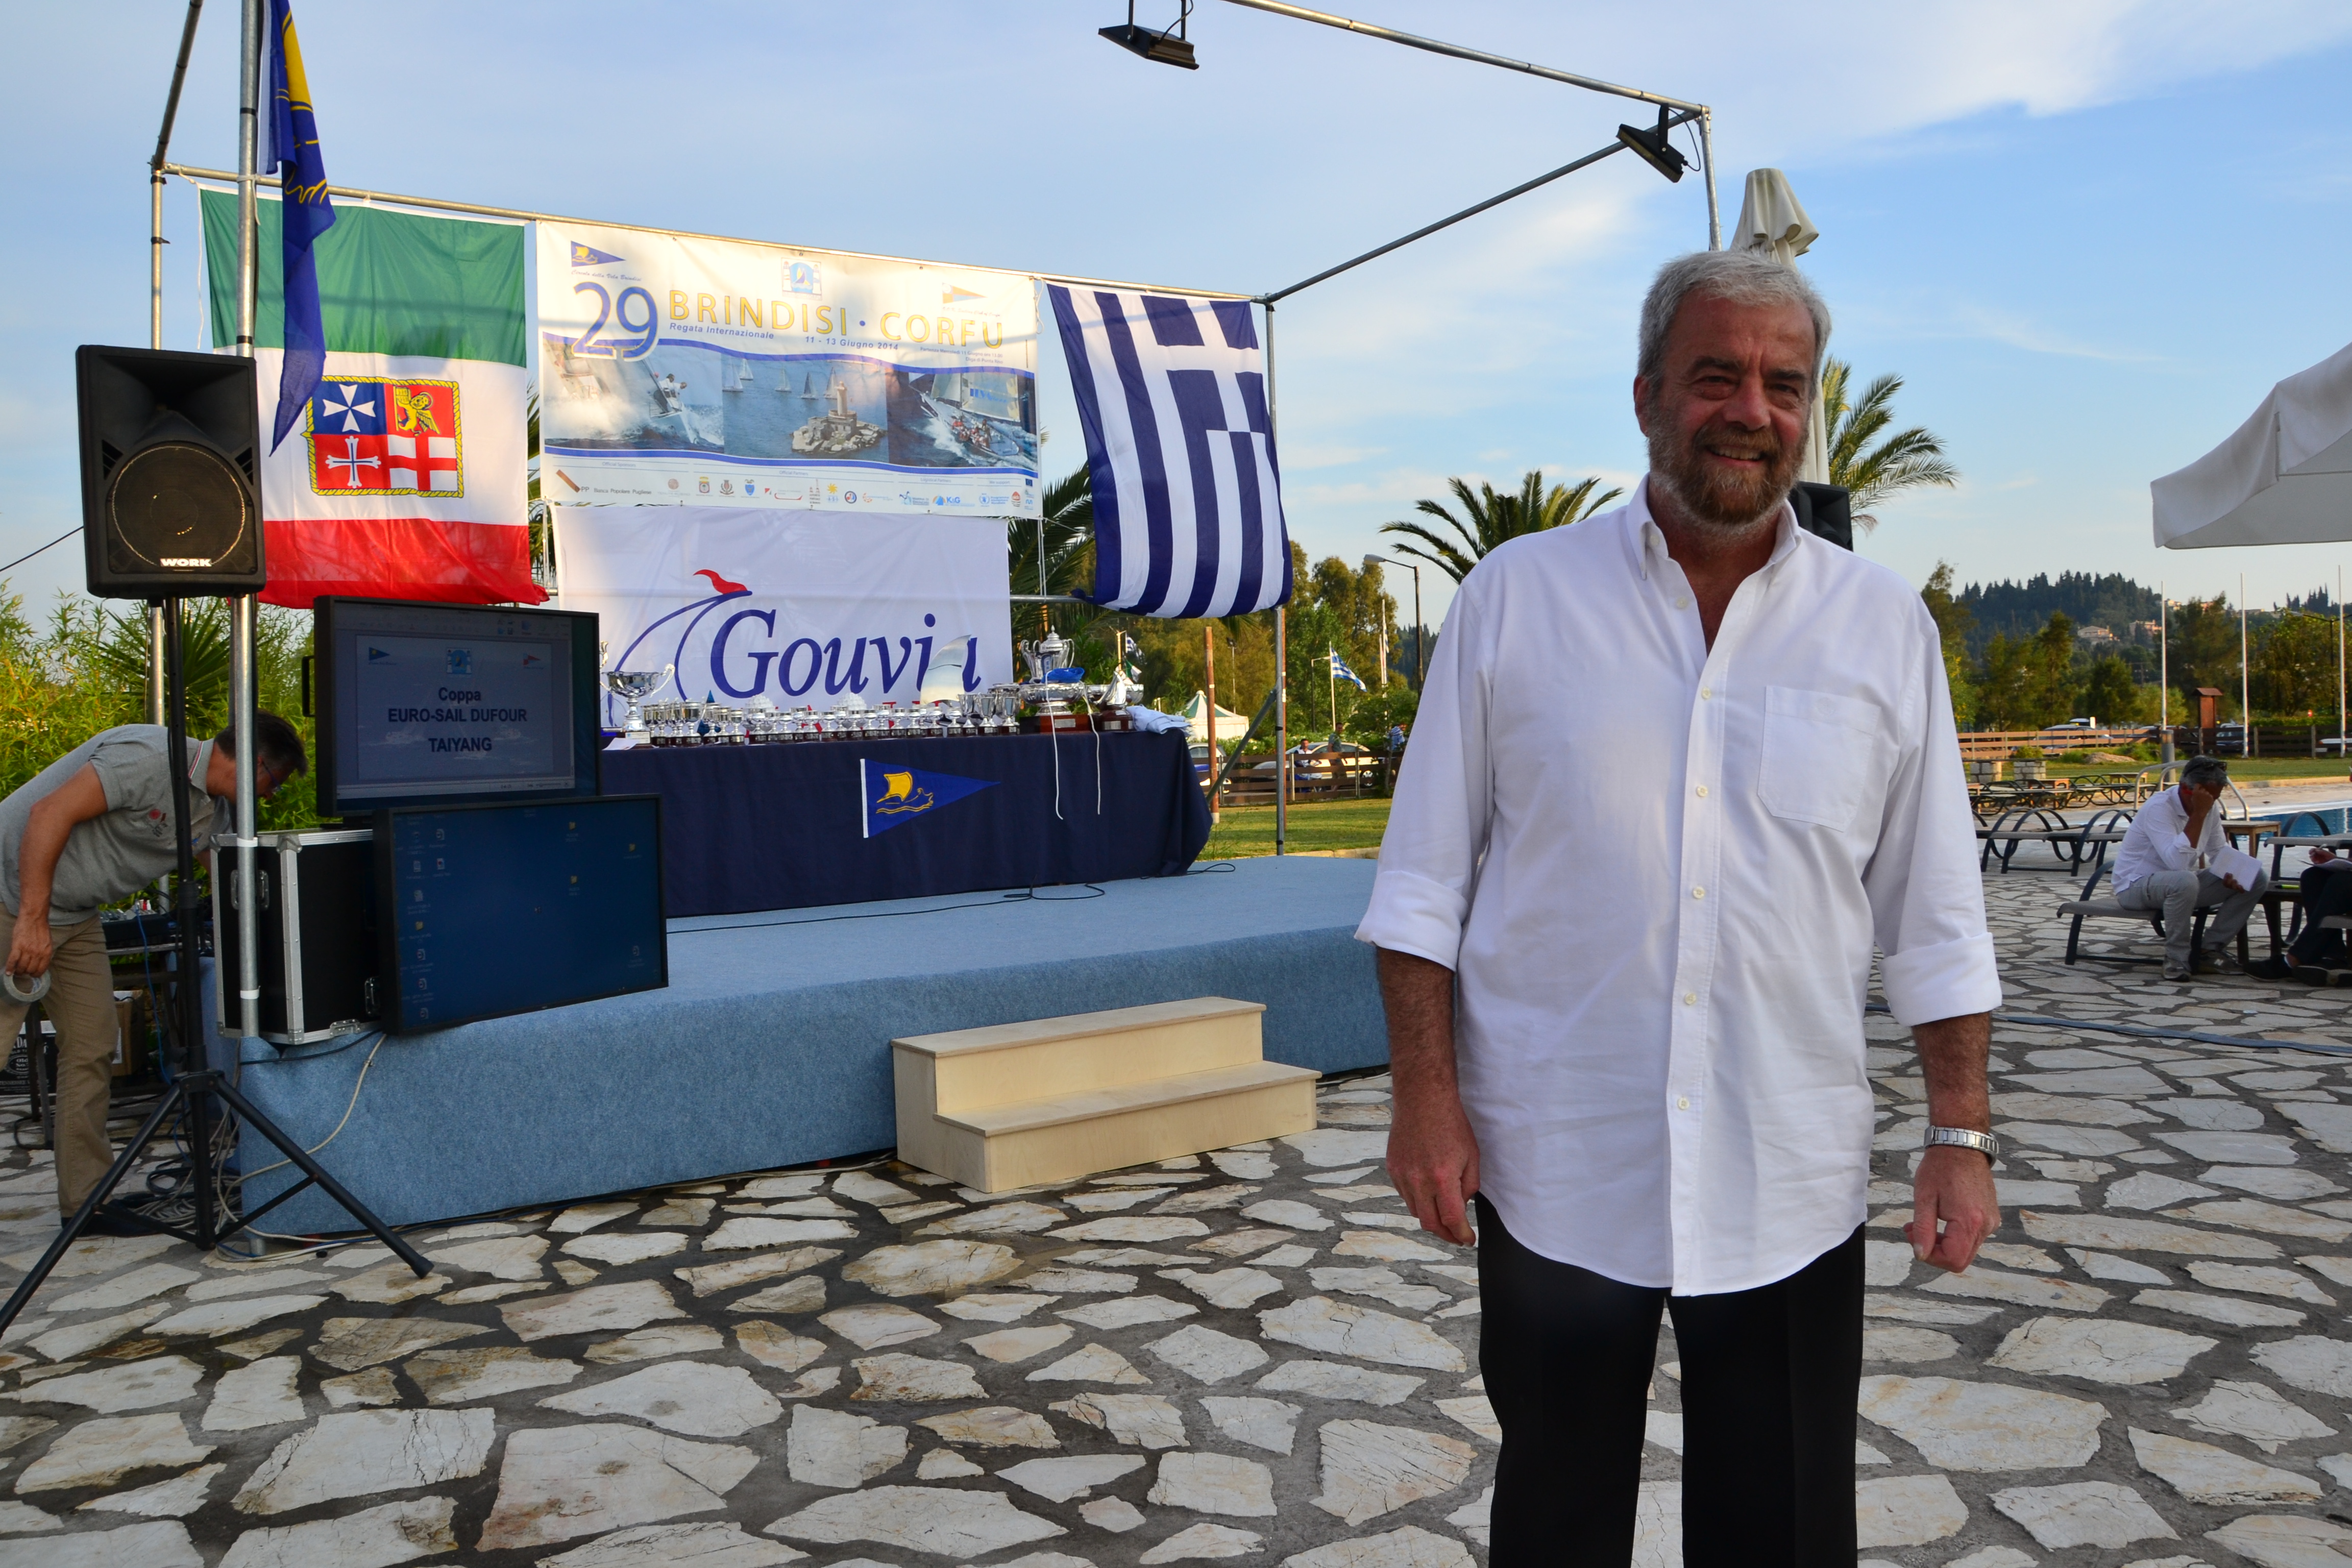 Tassa sulle barche in Grecia? “Tranquilli, non entrerà mai in vigore”, ce lo dice Dimitris Koutsodontis, direttore di Gouvia Marina (Corfù). Nostra intervista